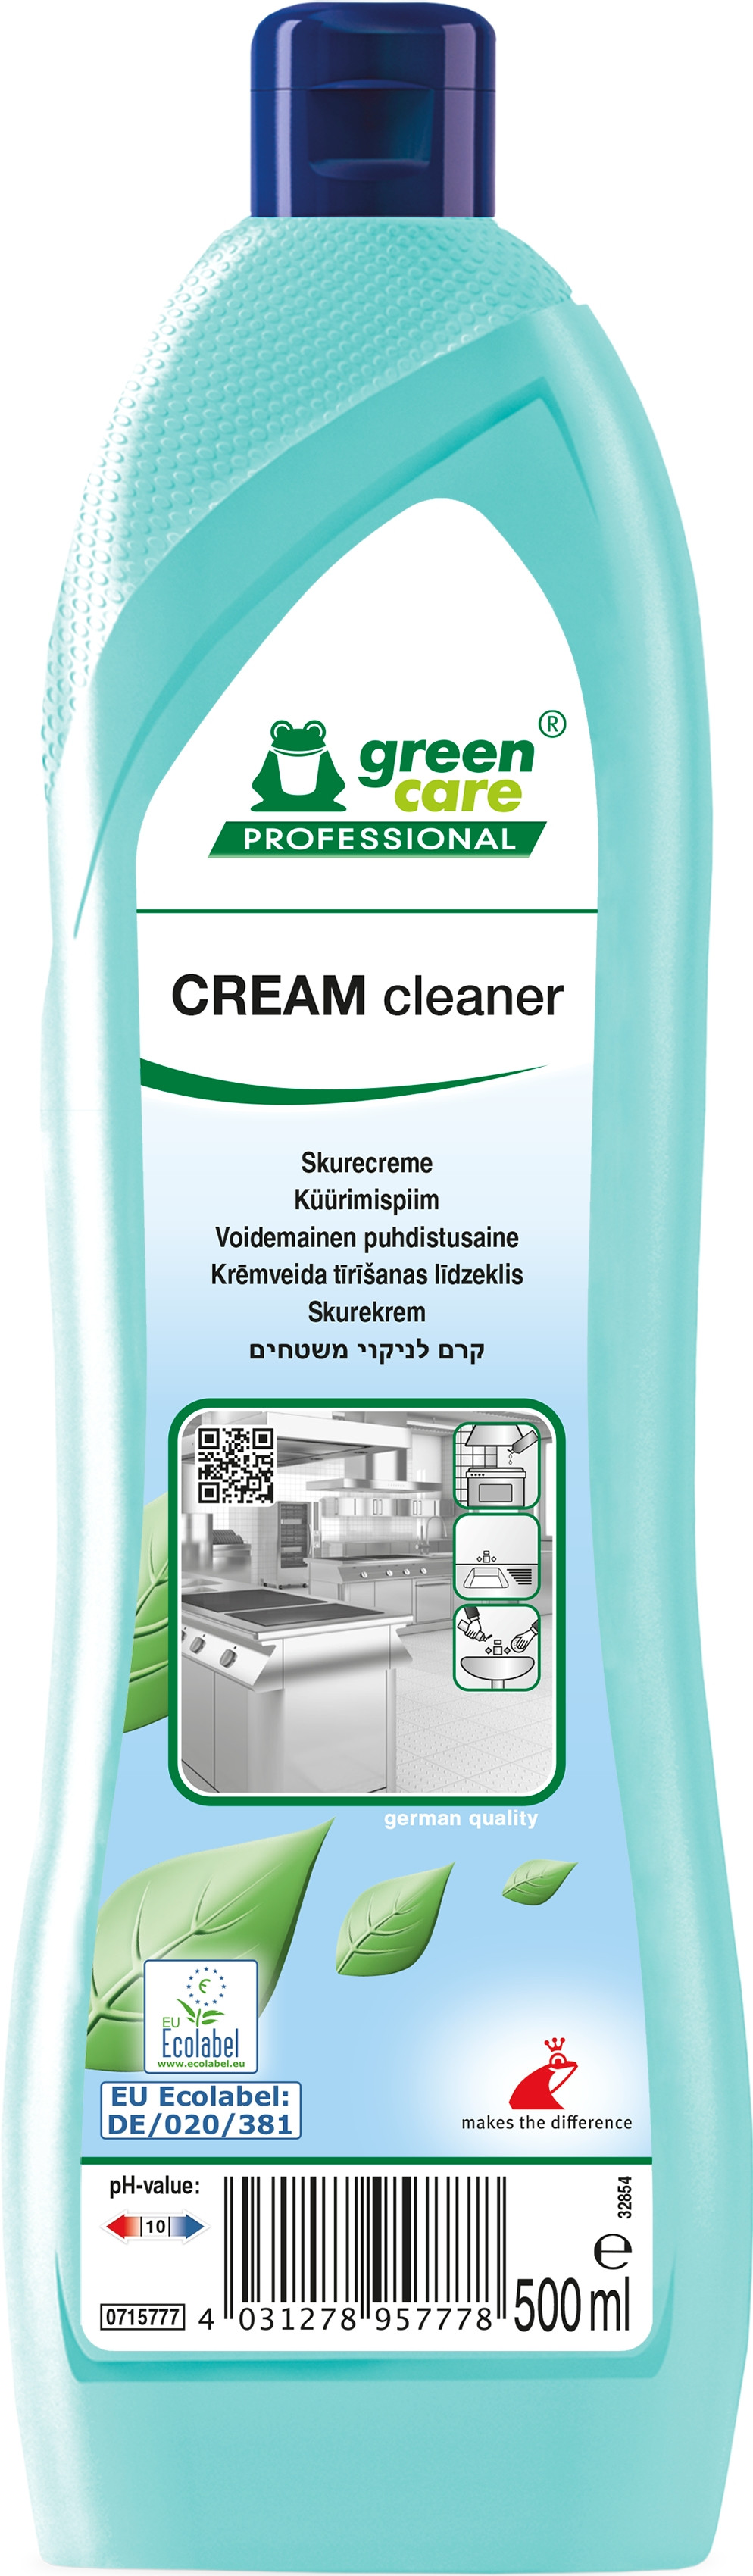 Billede af Green Care Prof Cream Cleaner 10 x 500 ml Skurecreme med parfume (715777)